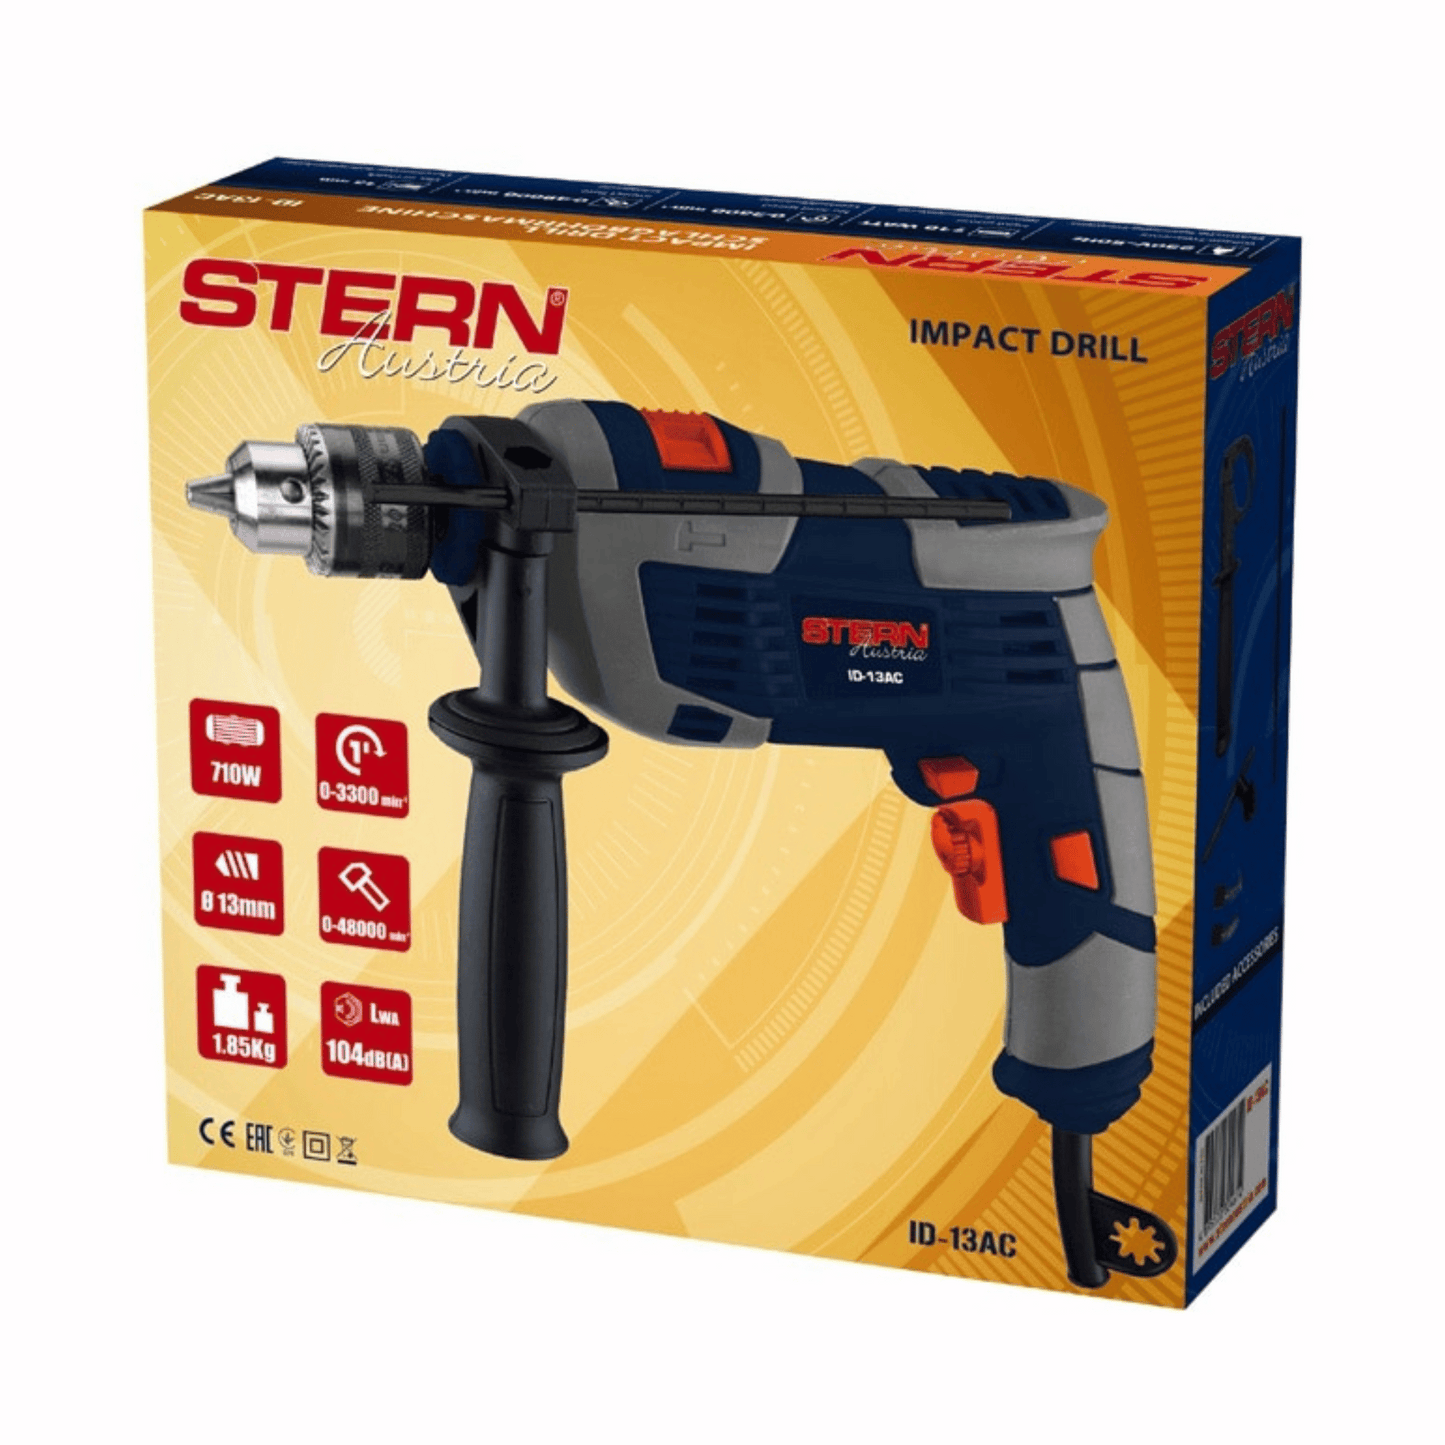 Stern Austria - Drill - ID13AC